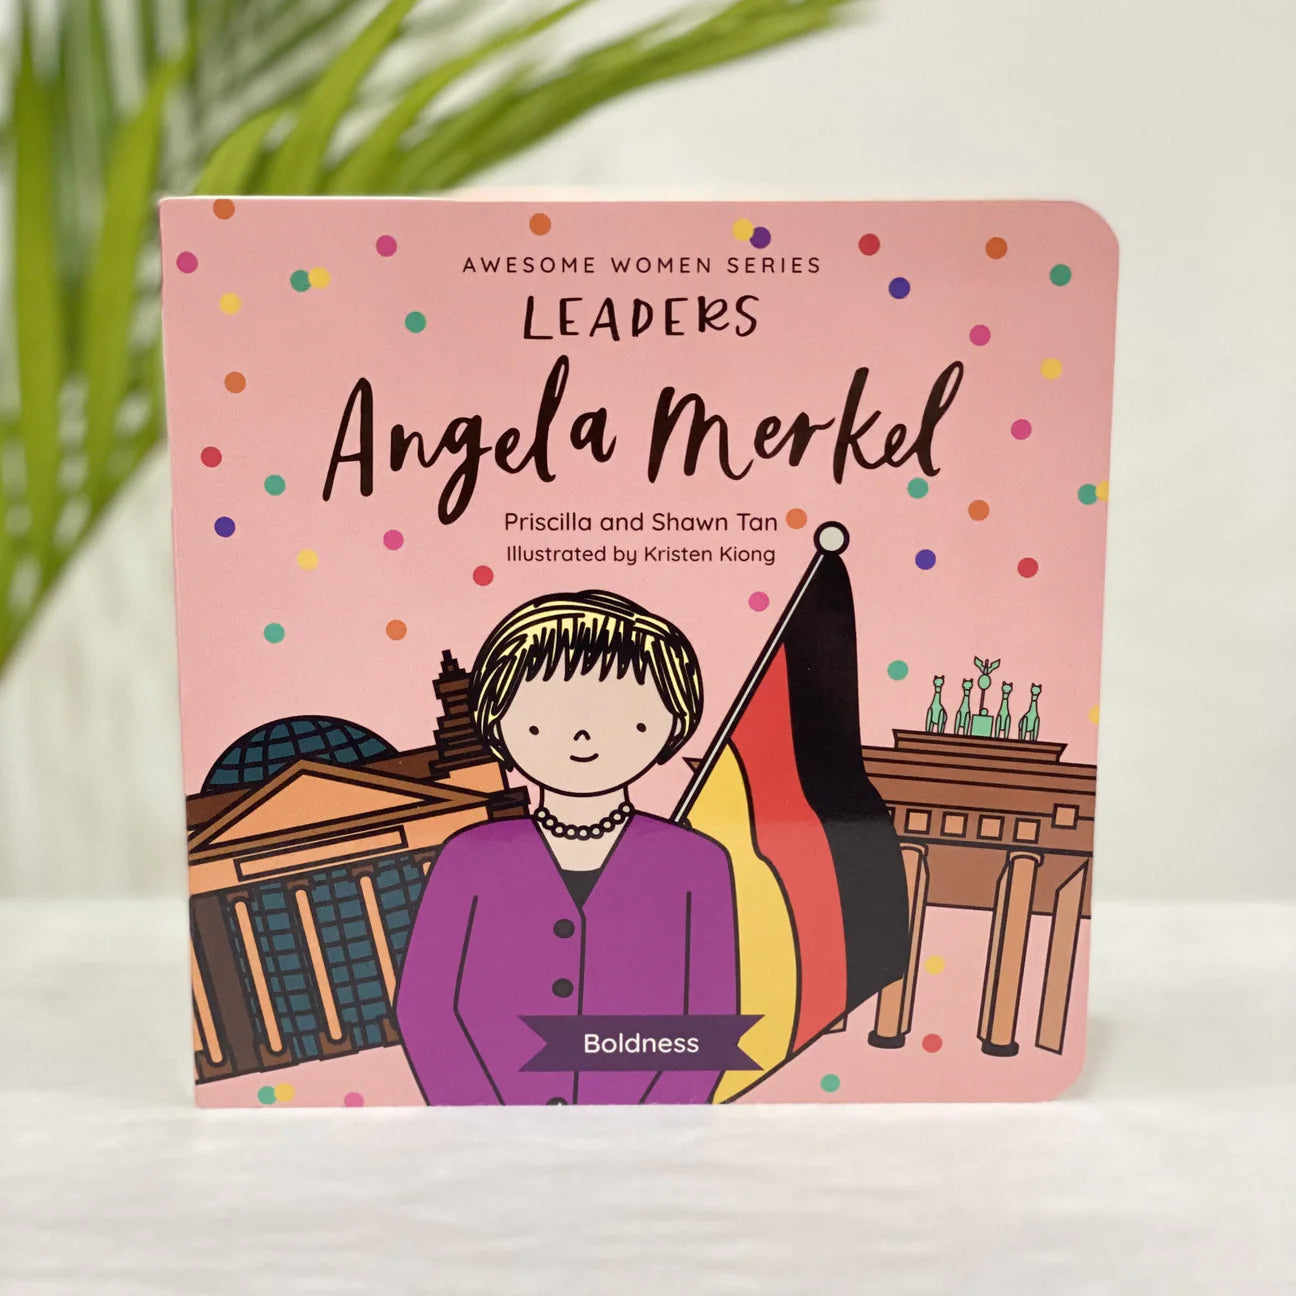 Awesome Women Series Leaders | Angela Merkel